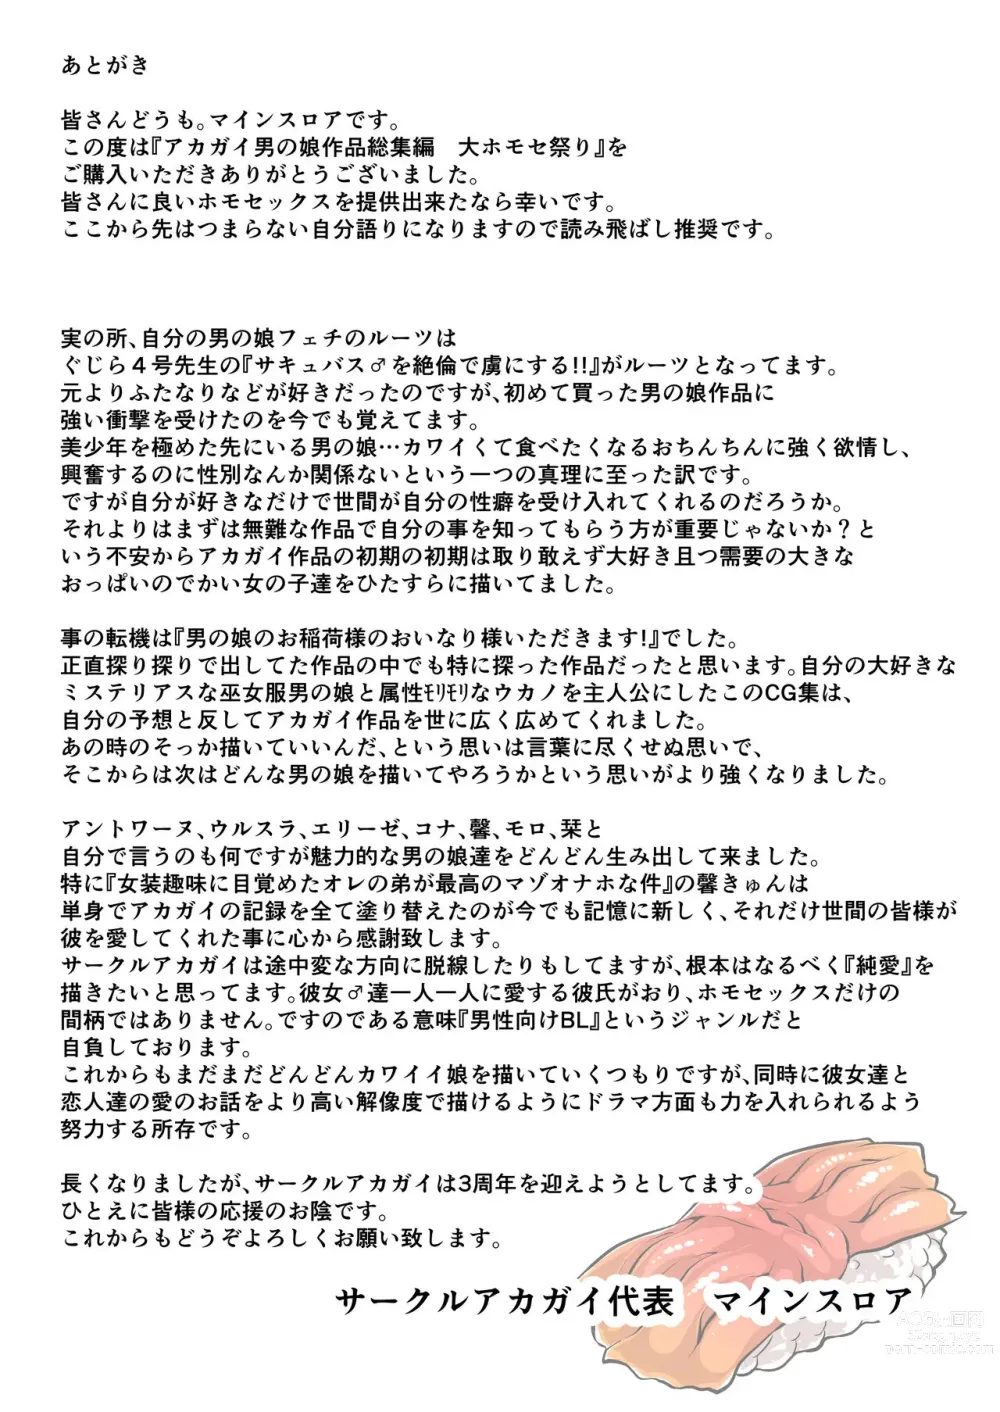 Page 8 of doujinshi Omake Manga